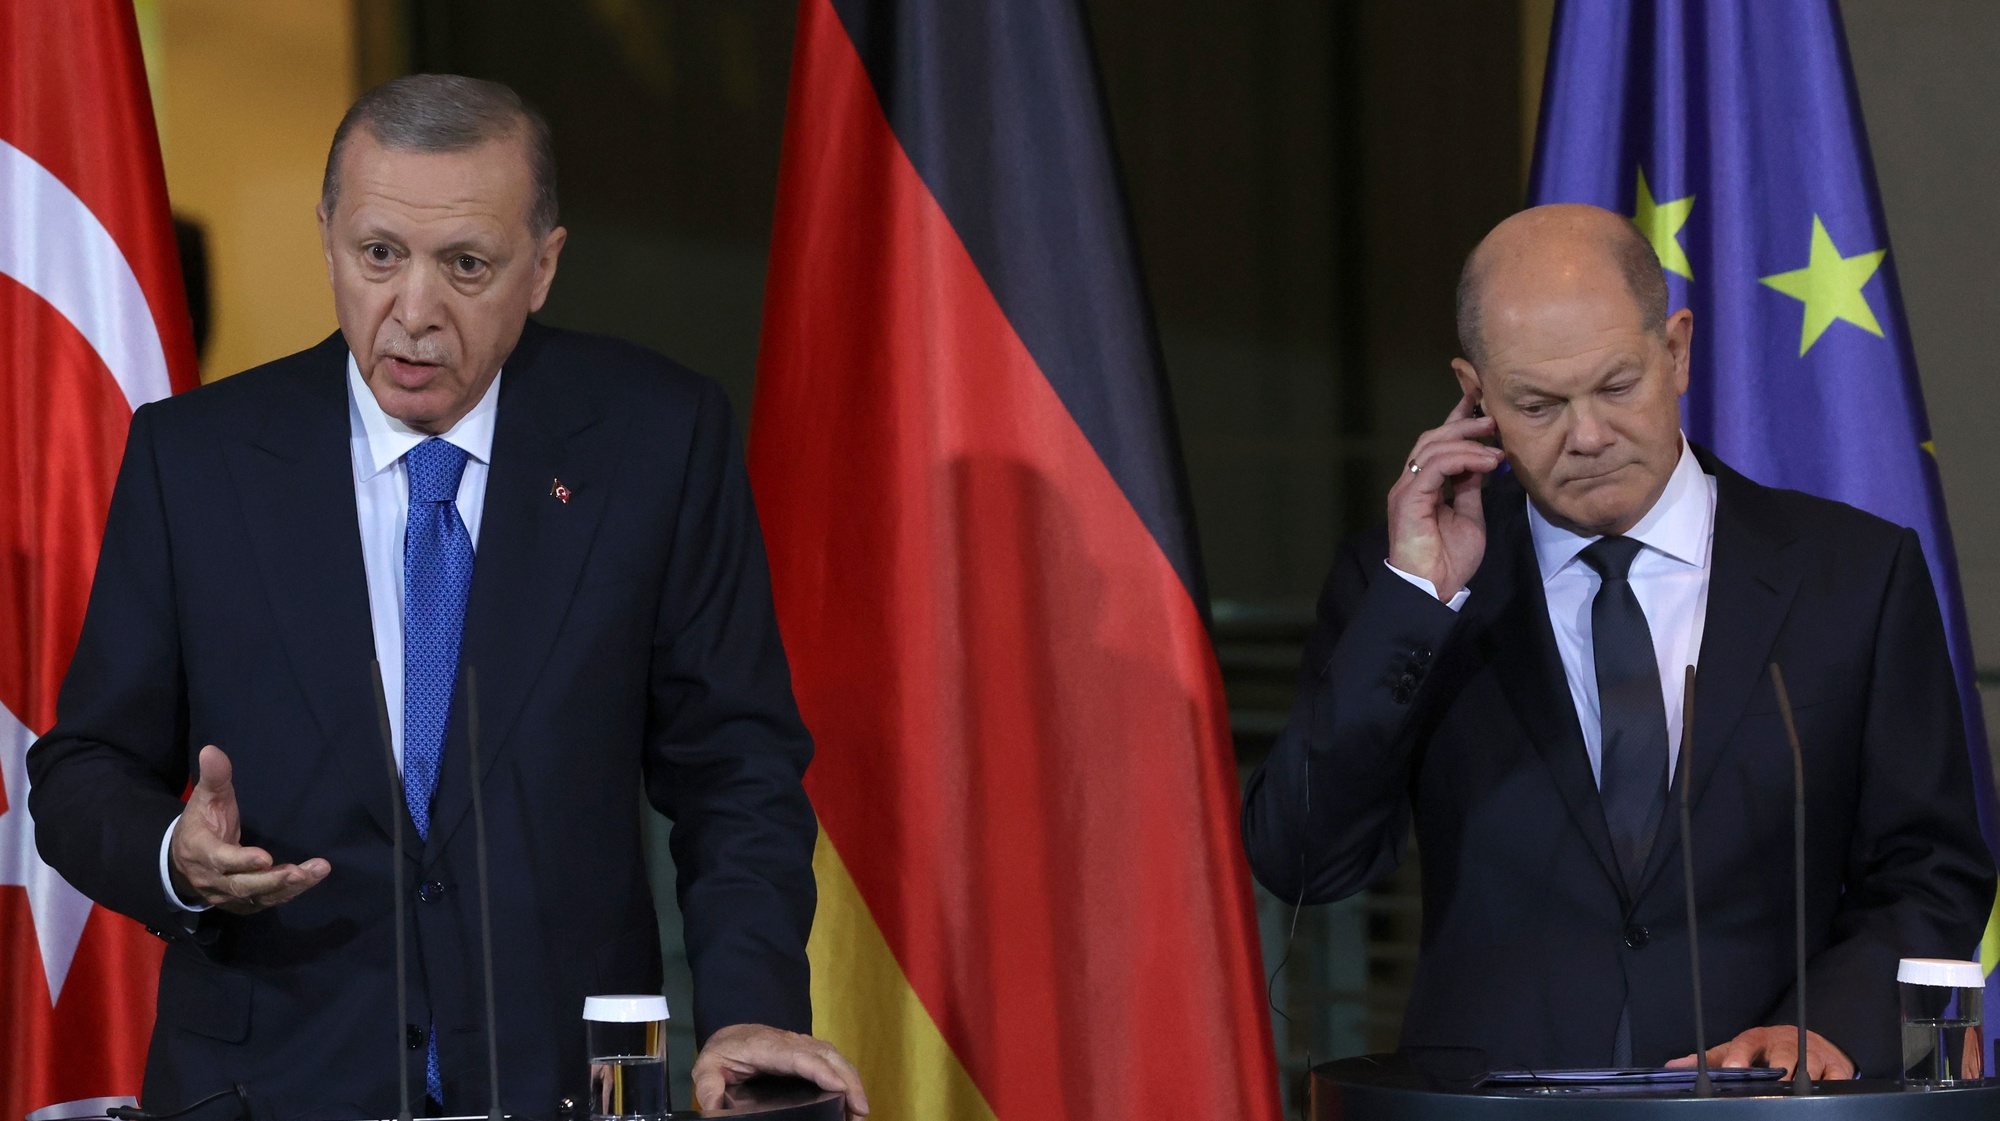 Erdogan e Scholz abordam situação em Gaza com posições divergentes mas objetivo comum